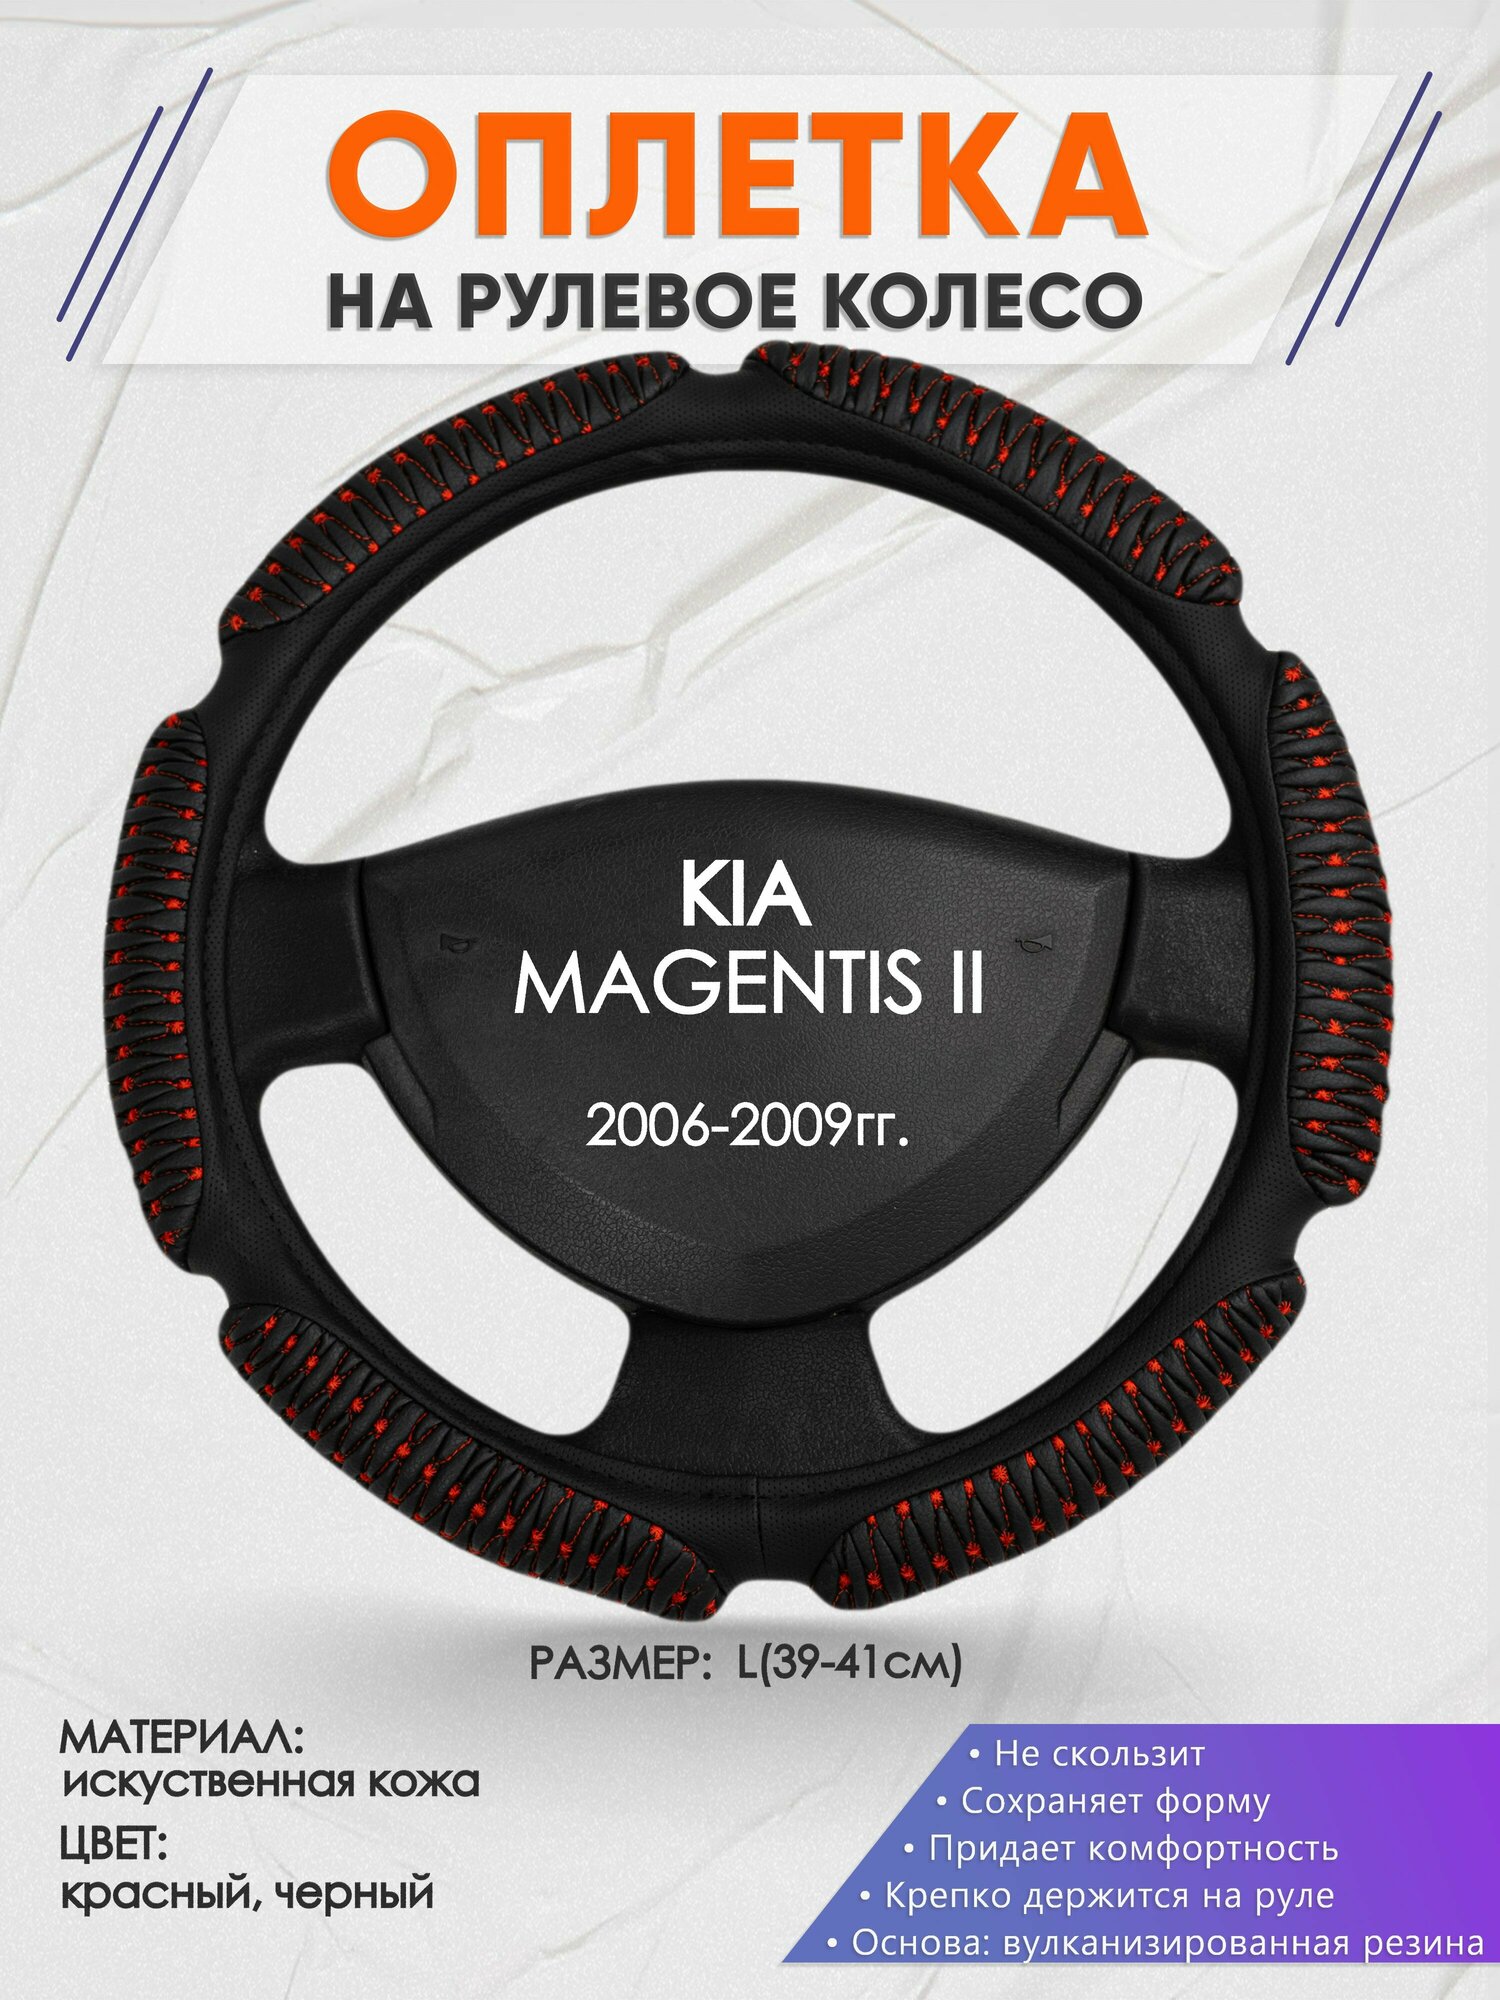 Оплетка на руль для KIA MAGENTIS 2(Киа Маджентис 2) 2006-2009, L(39-41см), Искусственная кожа 01